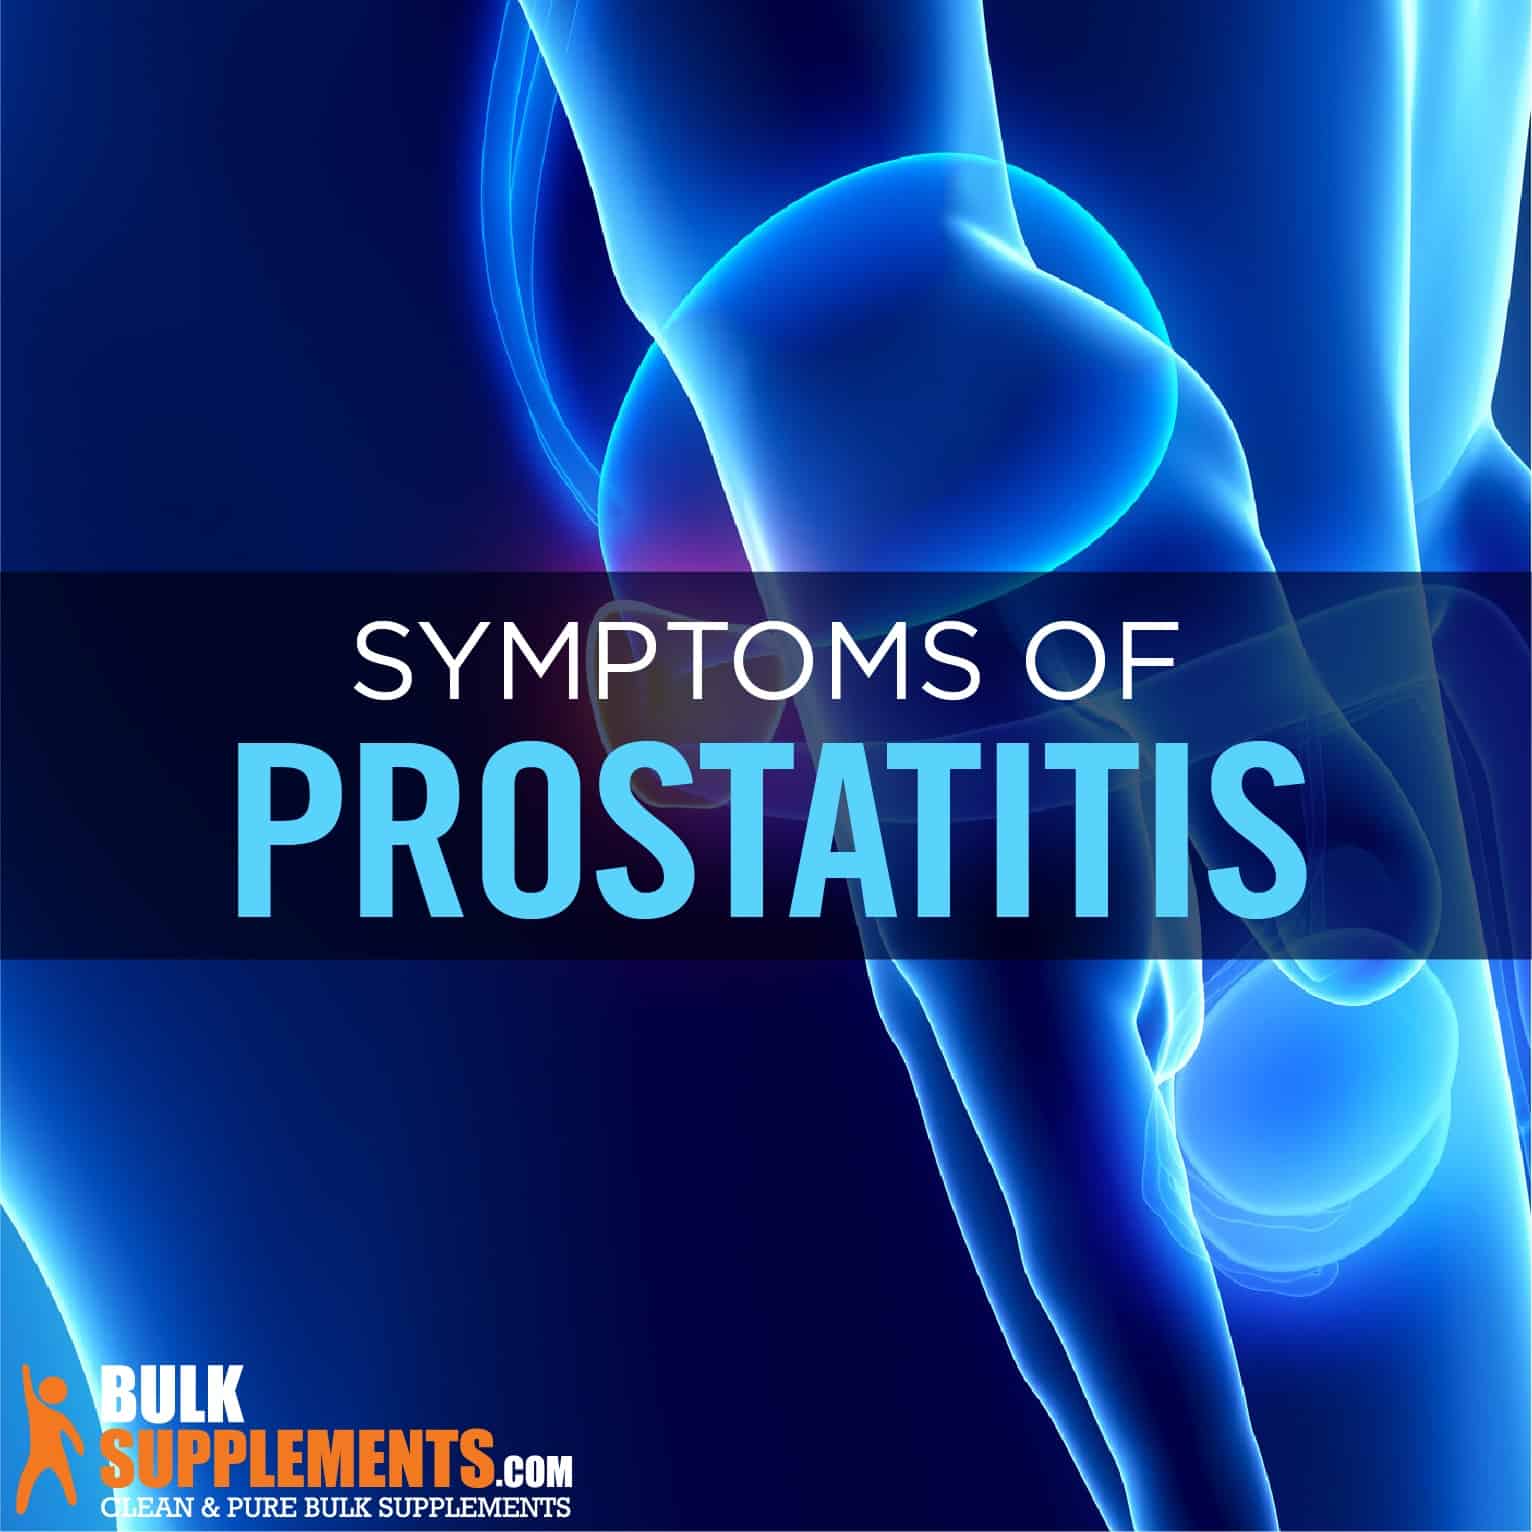 chronic prostatitis symptoms come and go